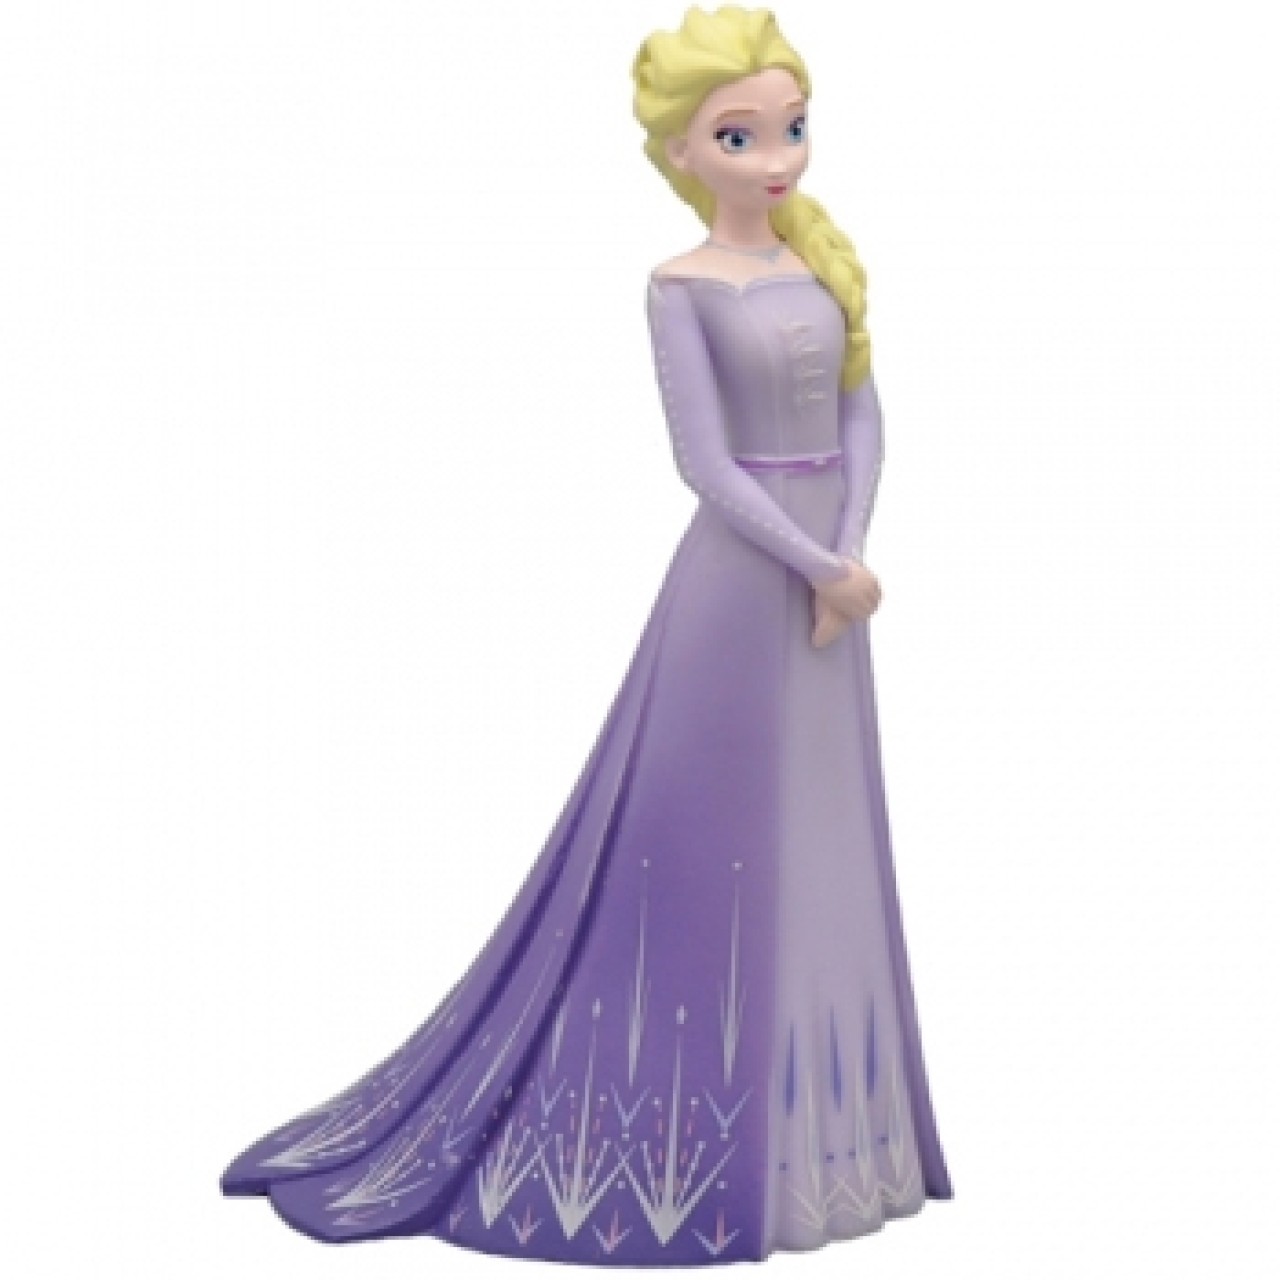 Tortenfigur Elsa, Frozen-Eiskönigin, 7,5 cm